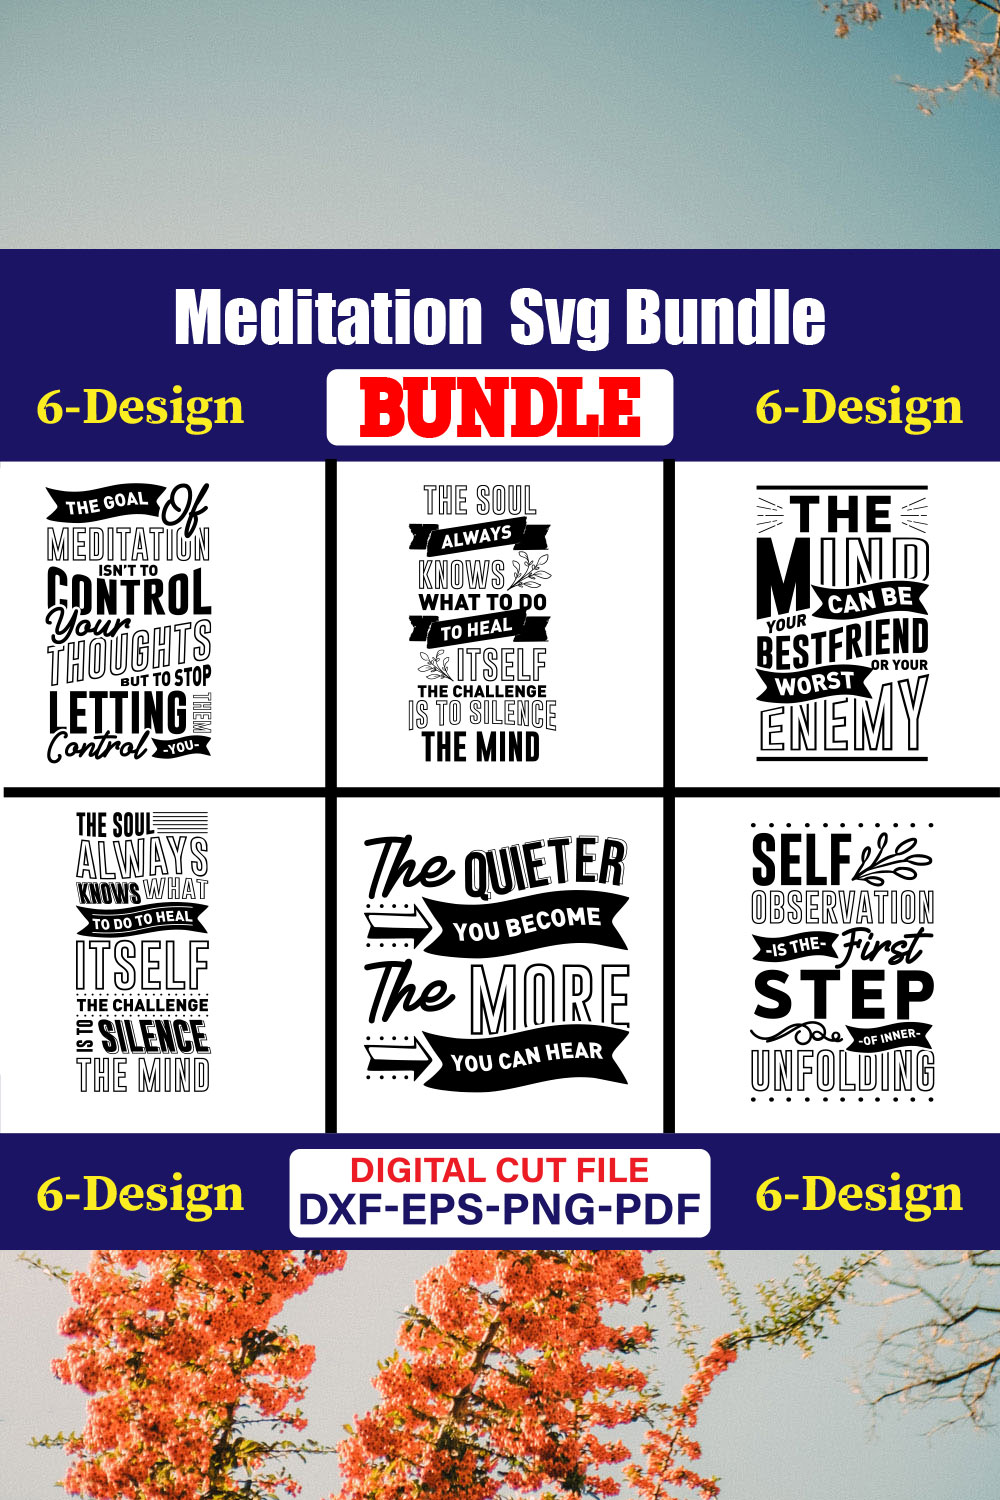 Meditation SVG T-shirt Design Bundle Vol-03 pinterest preview image.